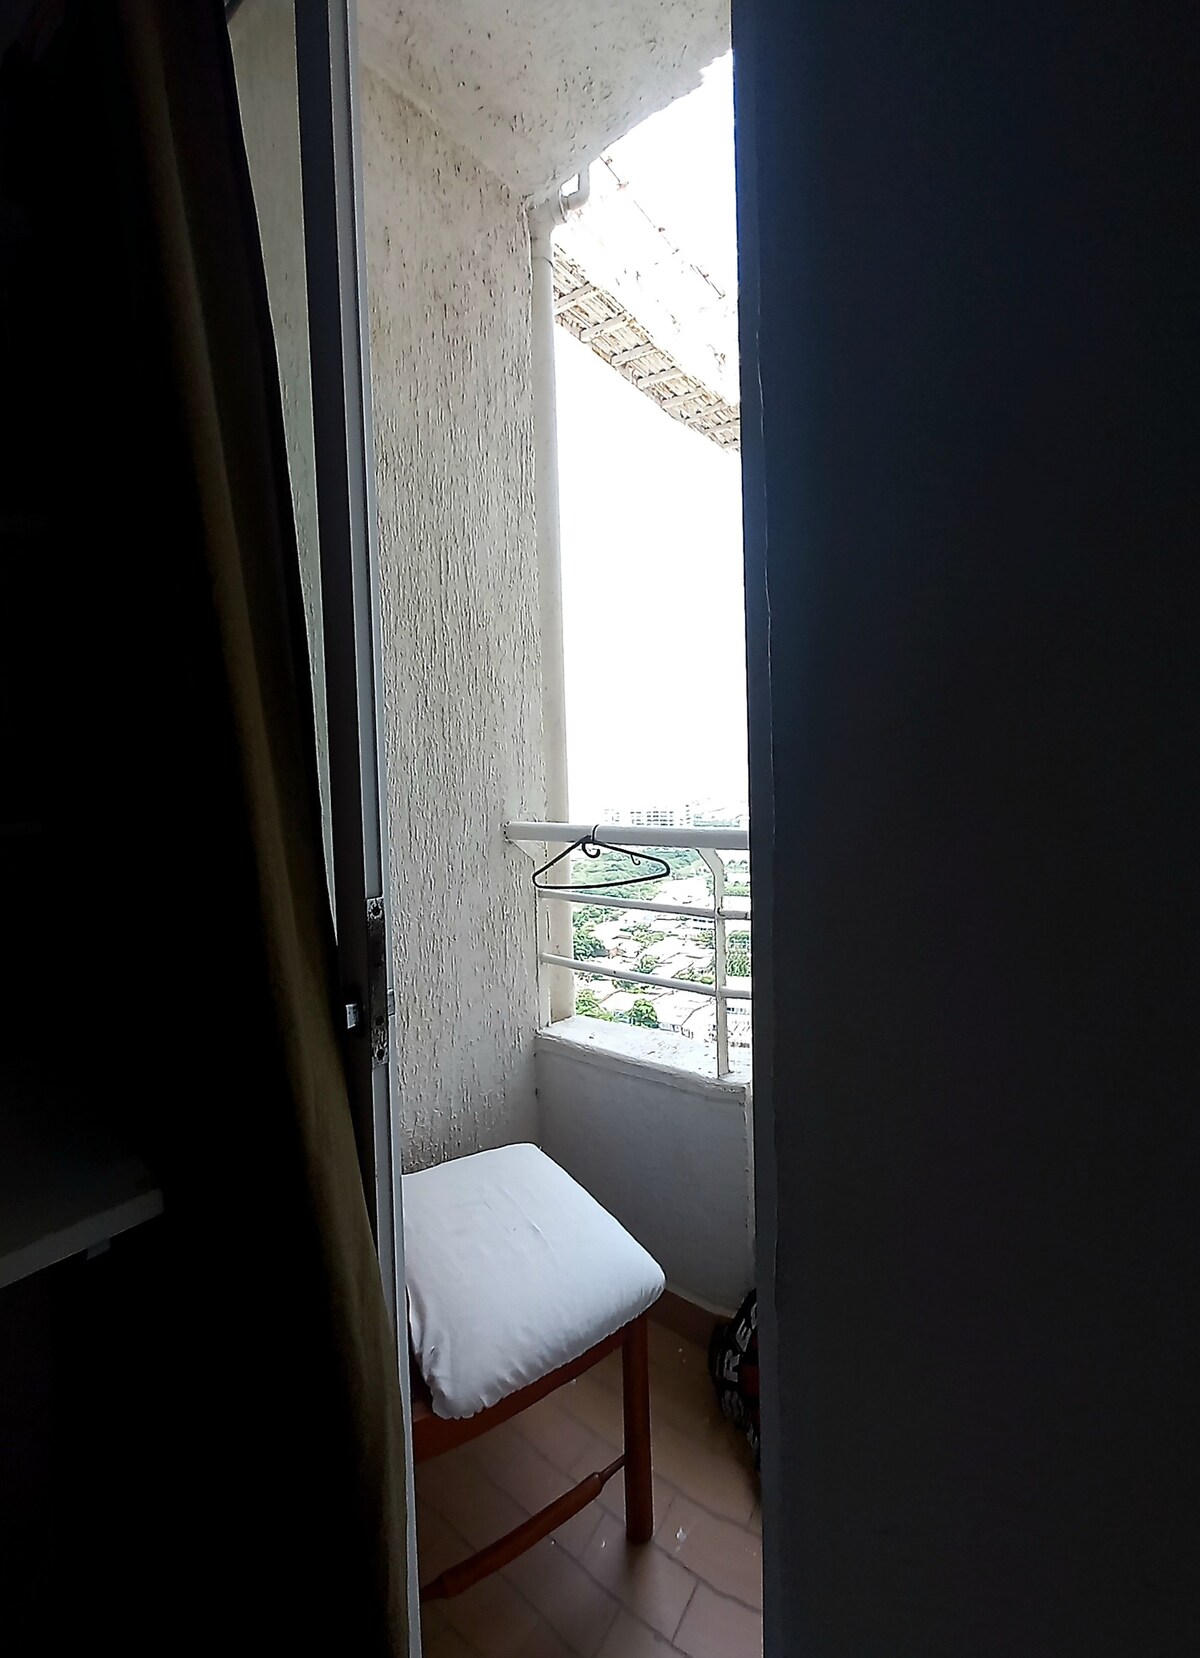 Habitación con balcón piso 28
Cartagena